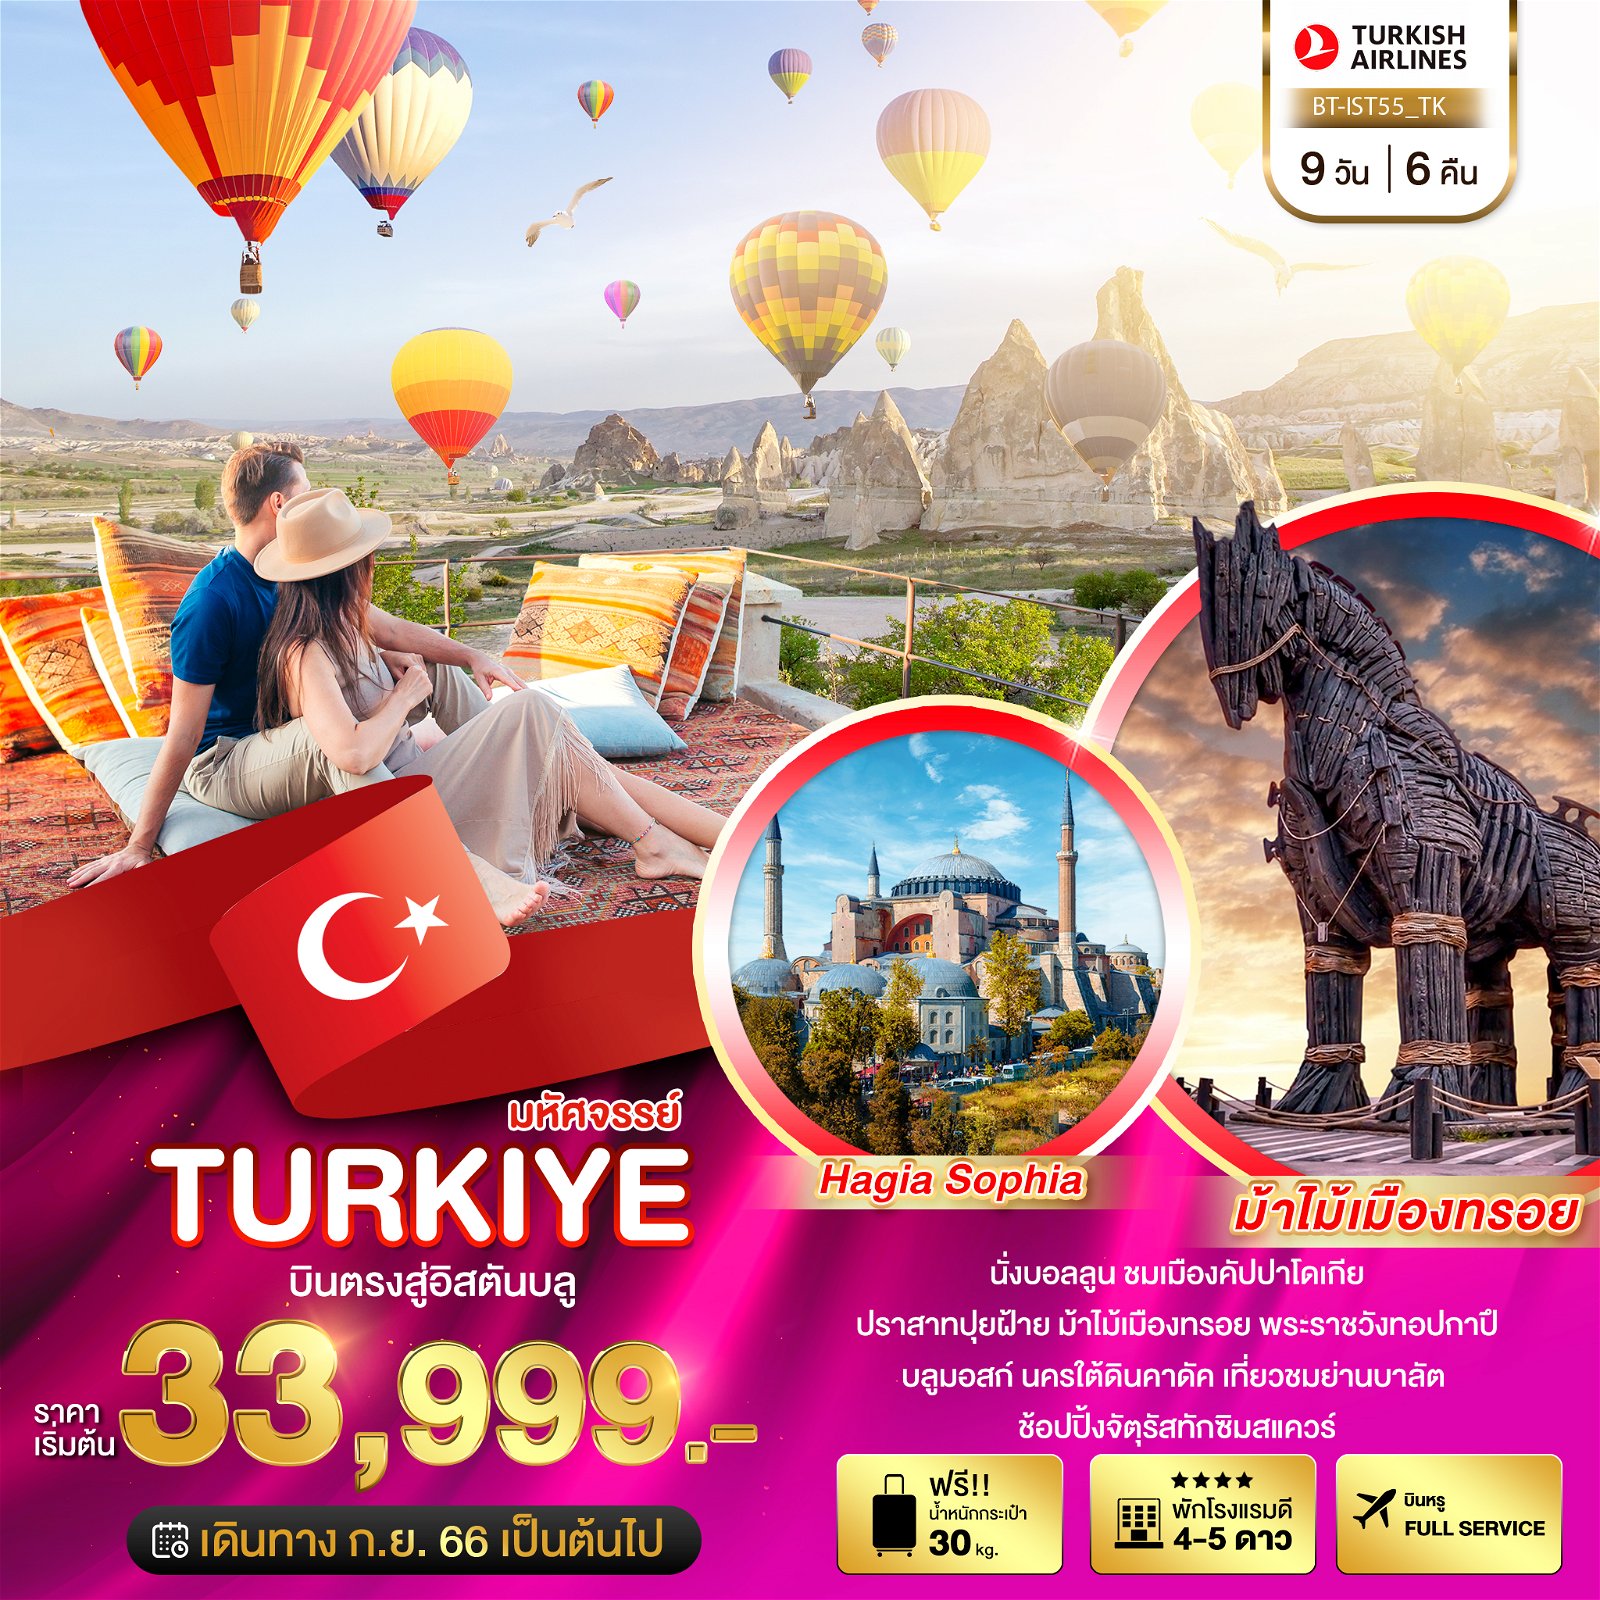 ทัวร์ตุรกี มหัศจรรย์ TURKIYE บินตรงสู่อิสตันบูล 9 วัน 6 คืน BY TK (BI)